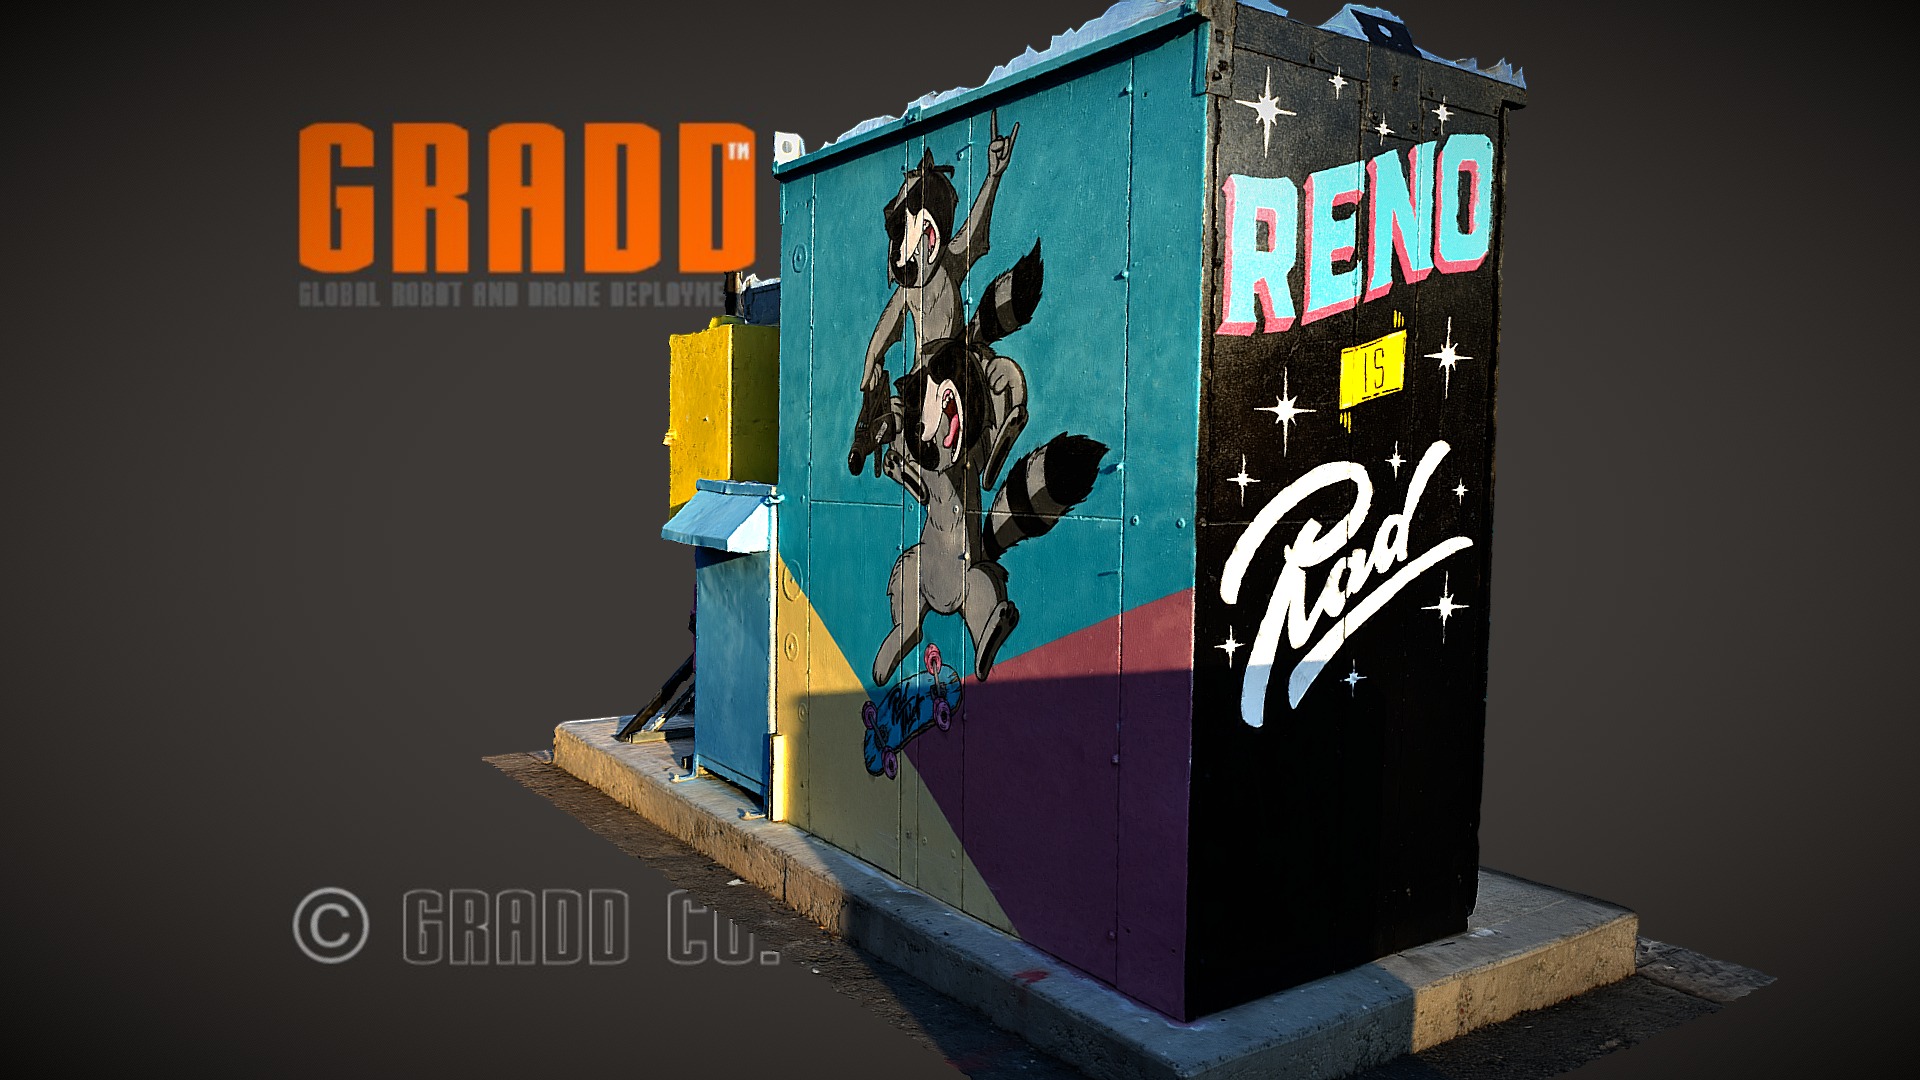 3D model GRADD 3D Model of Reno is Rad, Reno, NV - This is a 3D model of the GRADD 3D Model of Reno is Rad, Reno, NV. The 3D model is about a poster of a cartoon character.